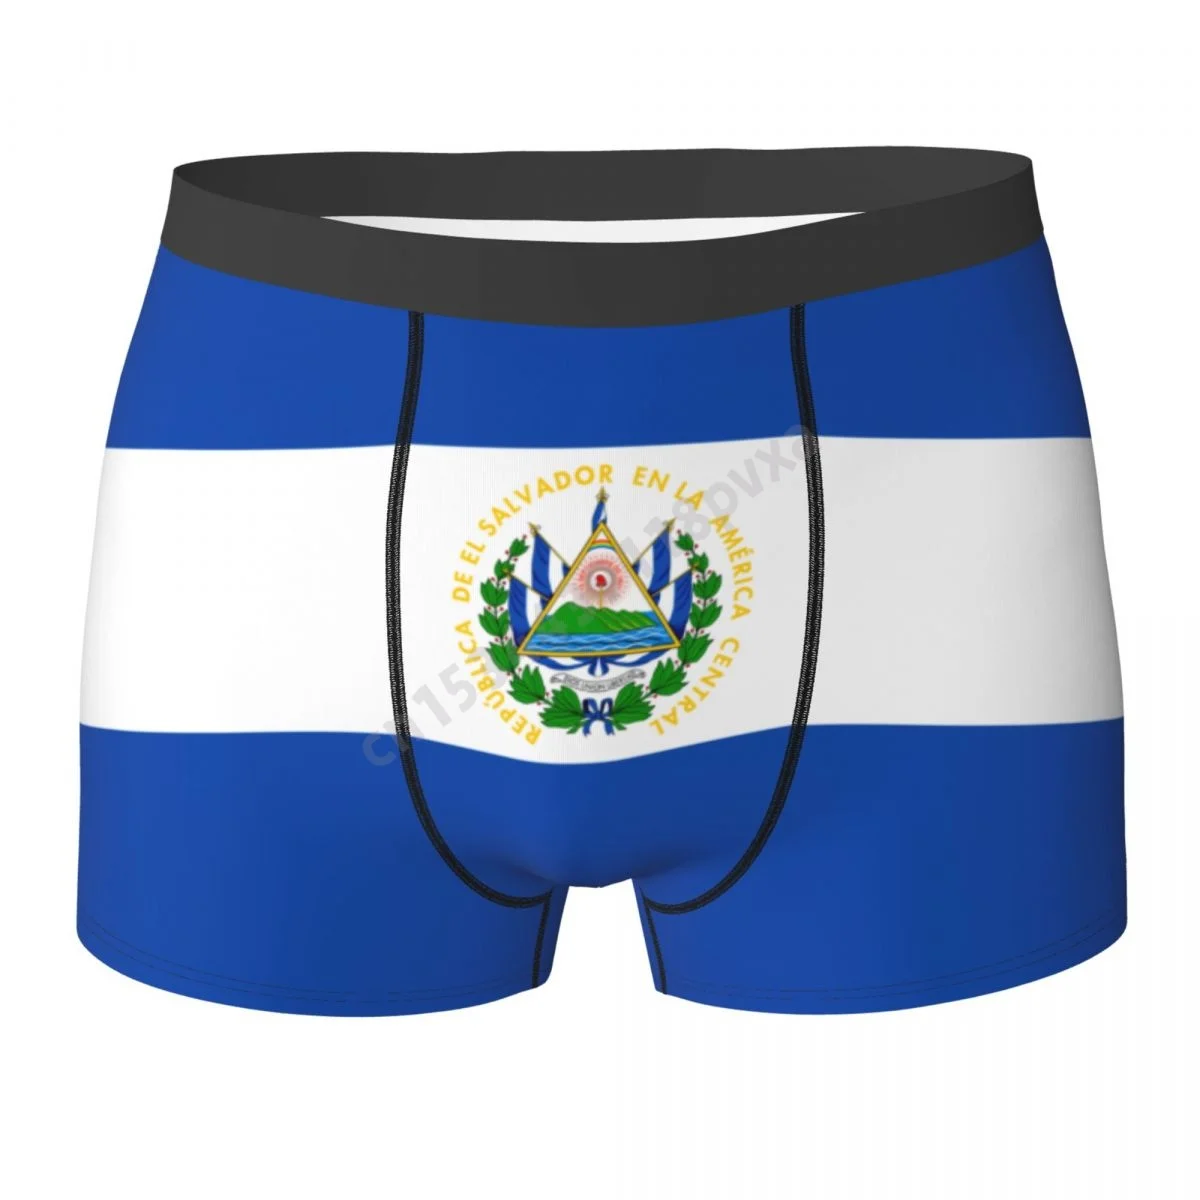 

Мужские трусы-боксеры с флагом Сальвадора, шорты из полиэстера, нижнее белье для мальчиков, большие размеры